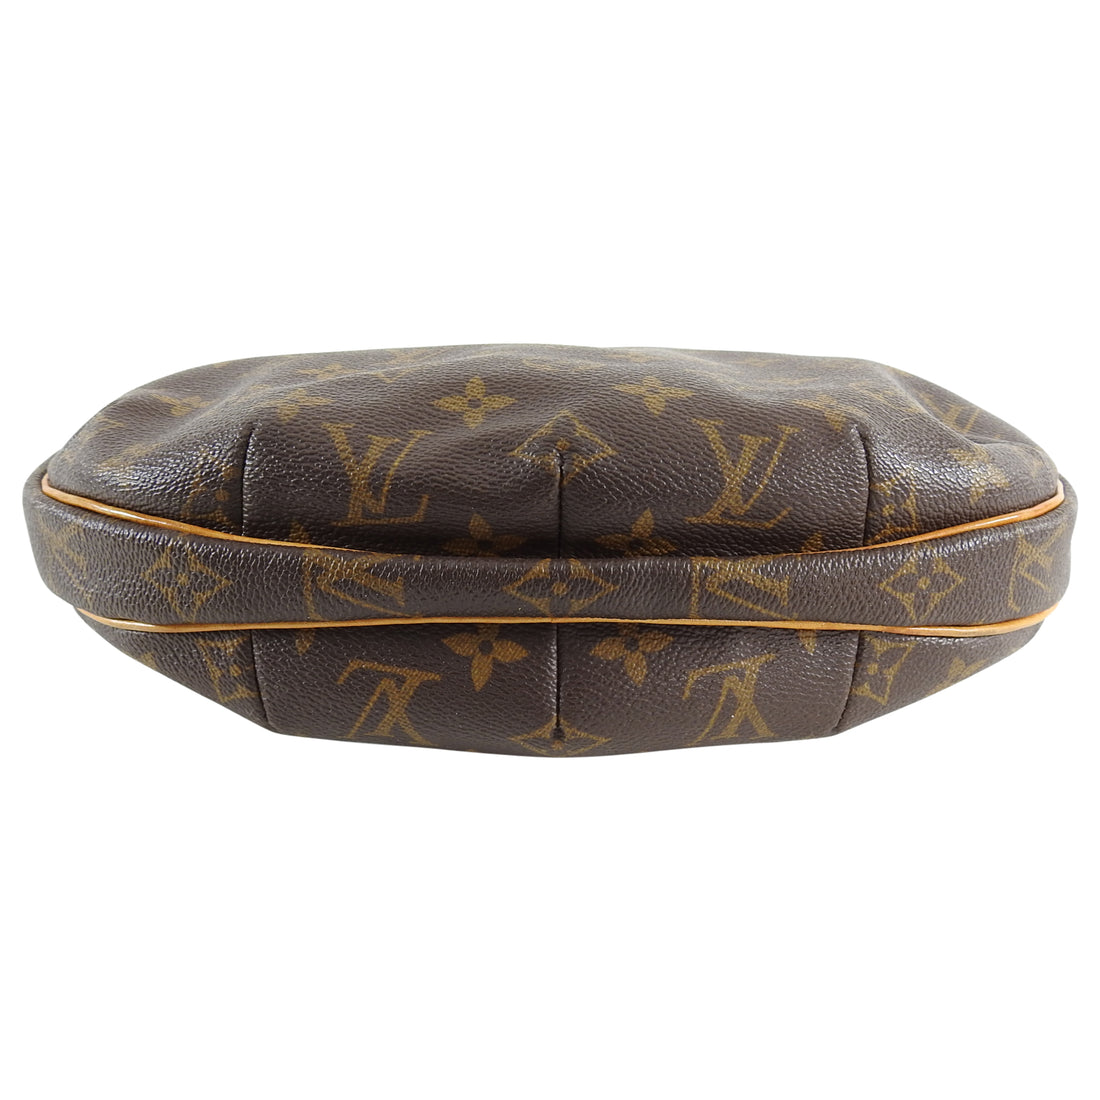 Louis Vuitton Monogram Croissant MM Shoulder Bag – I MISS YOU VINTAGE